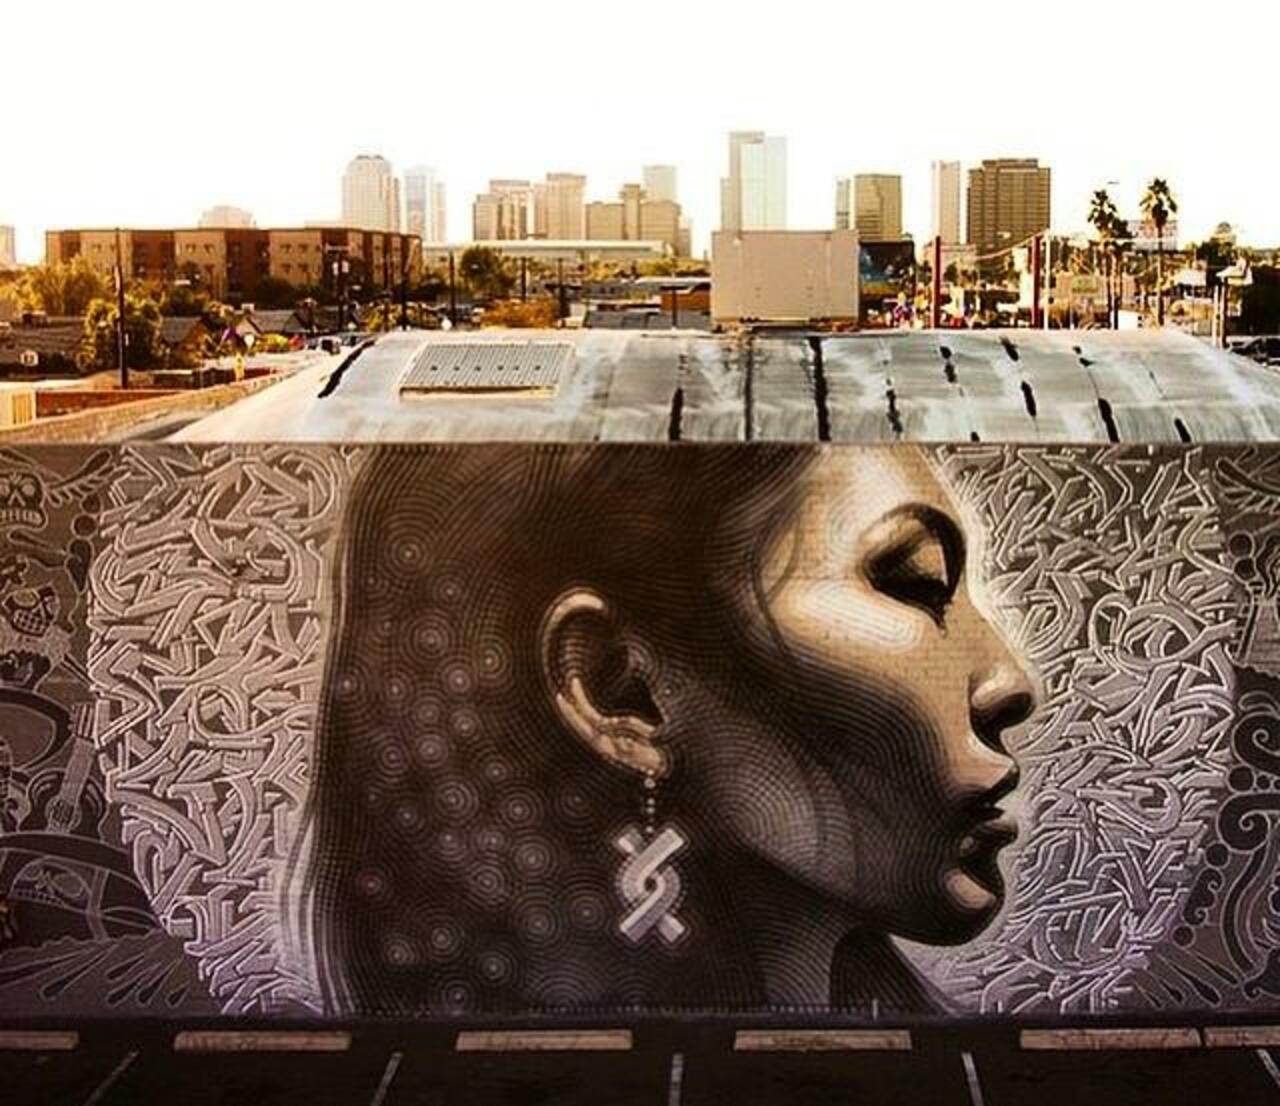 Latest Street Art work by El Mac in Phoenix, Arizona

#art #mural #graffiti #streetart http://t.co/LEjKxp7Vd7